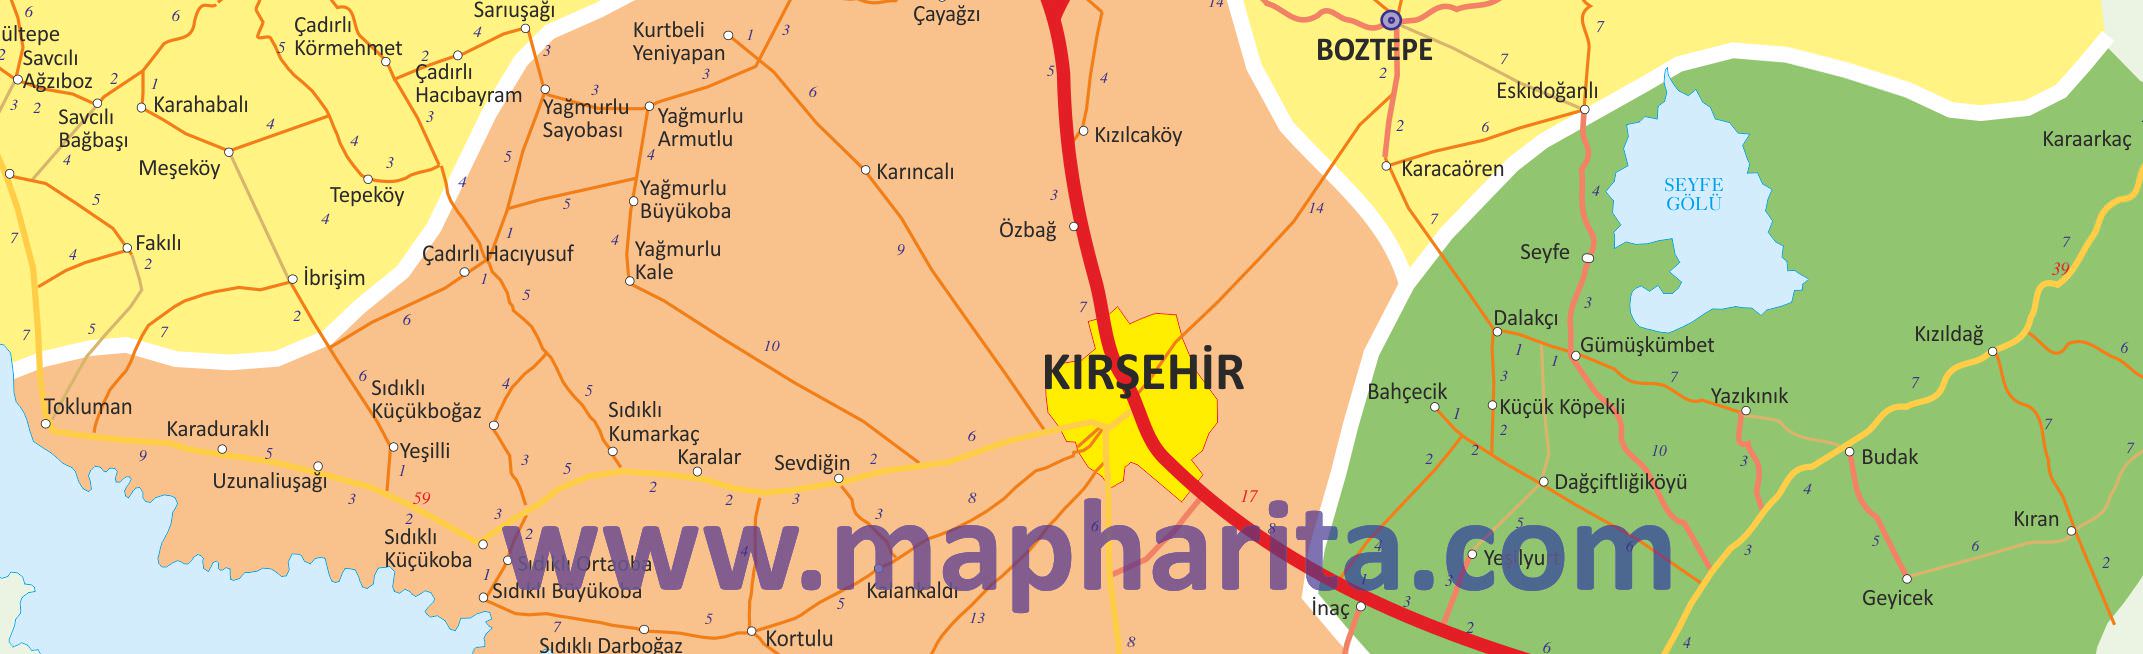 Kırşehir İl Haritası Yakından Örnek Görüntüsü